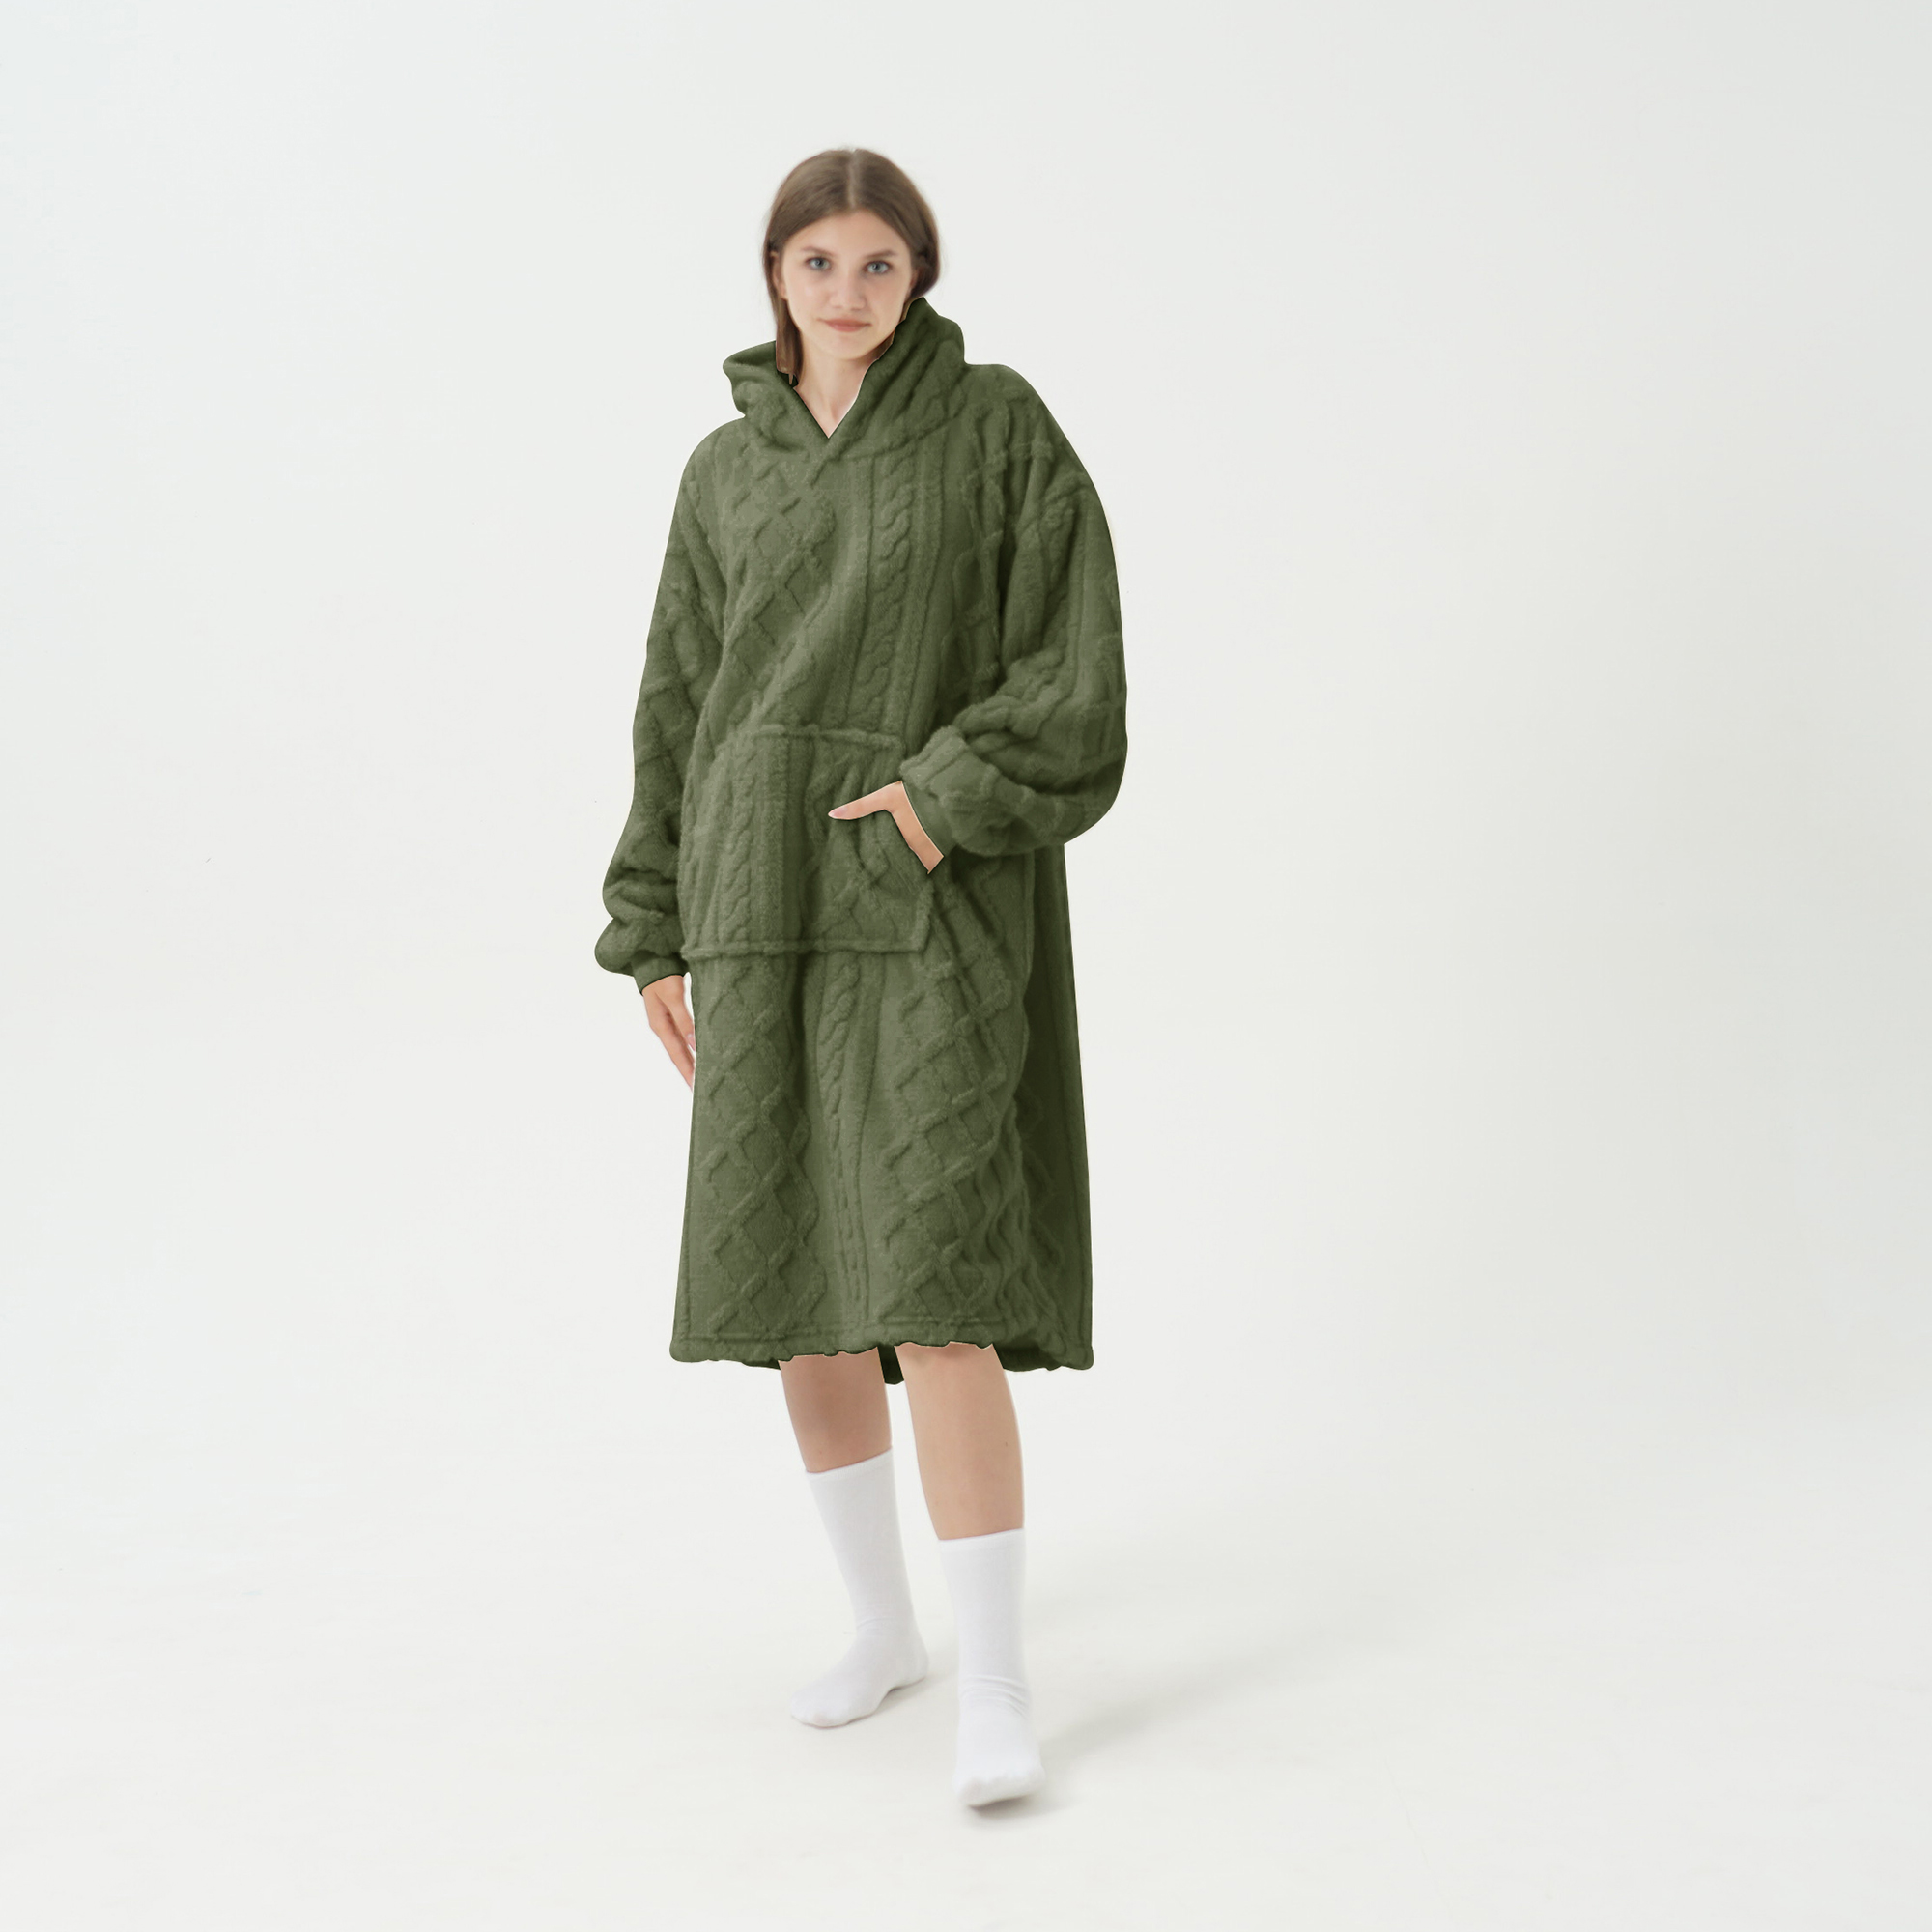 SOPHIE Oversized Hoodie - 70x110 cm - Hoodie & deken in één - extra grote kabeltrui met capuchon - Military Olive - groen